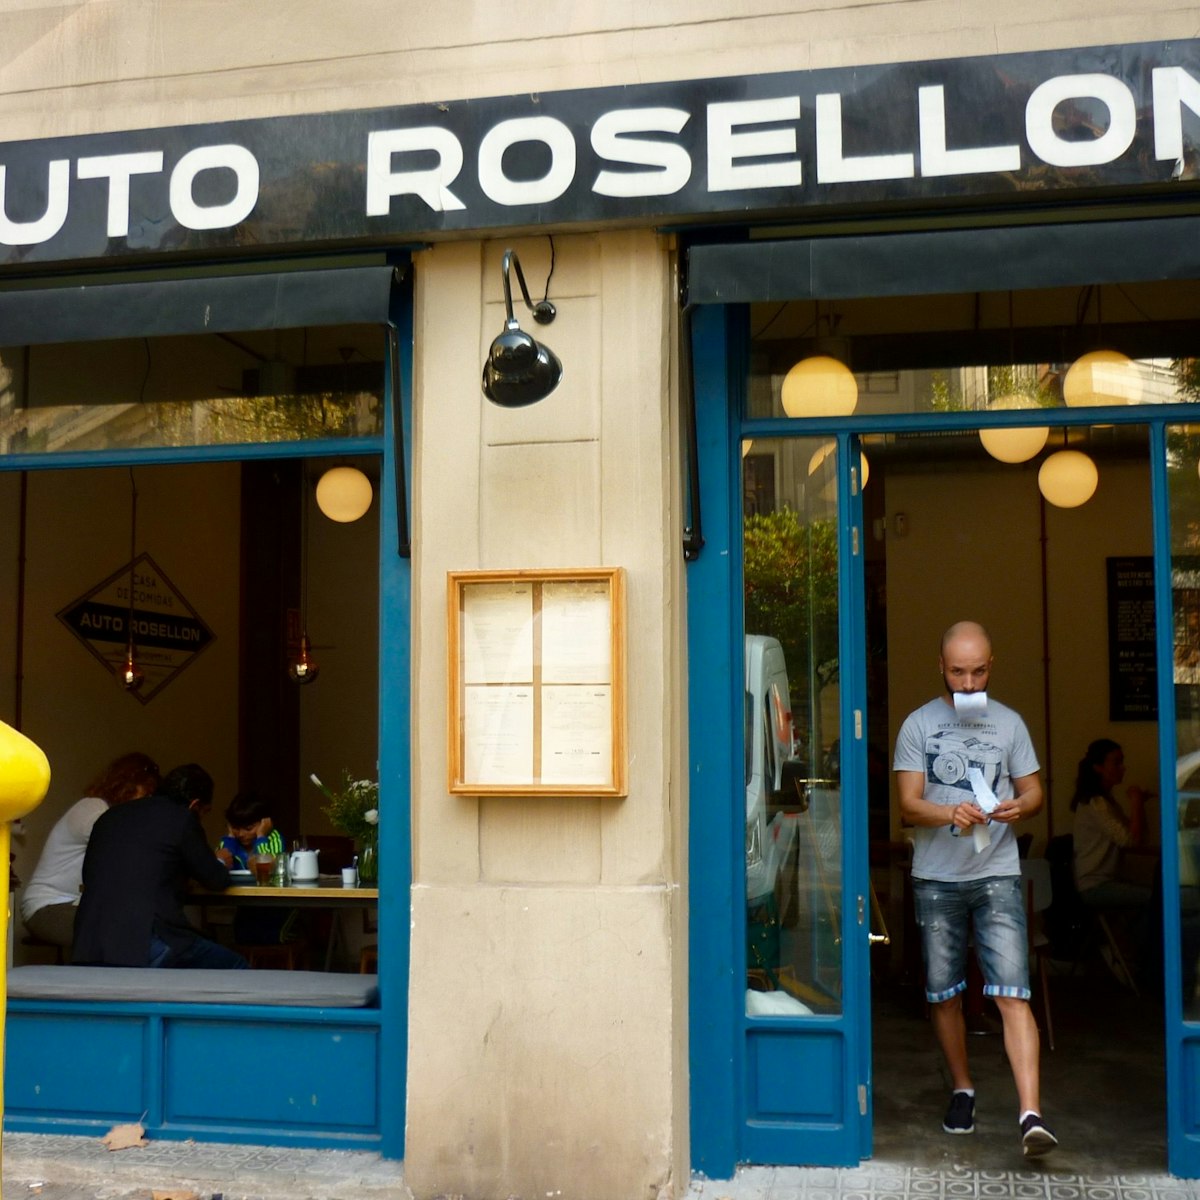 Auto Rosellon facade.